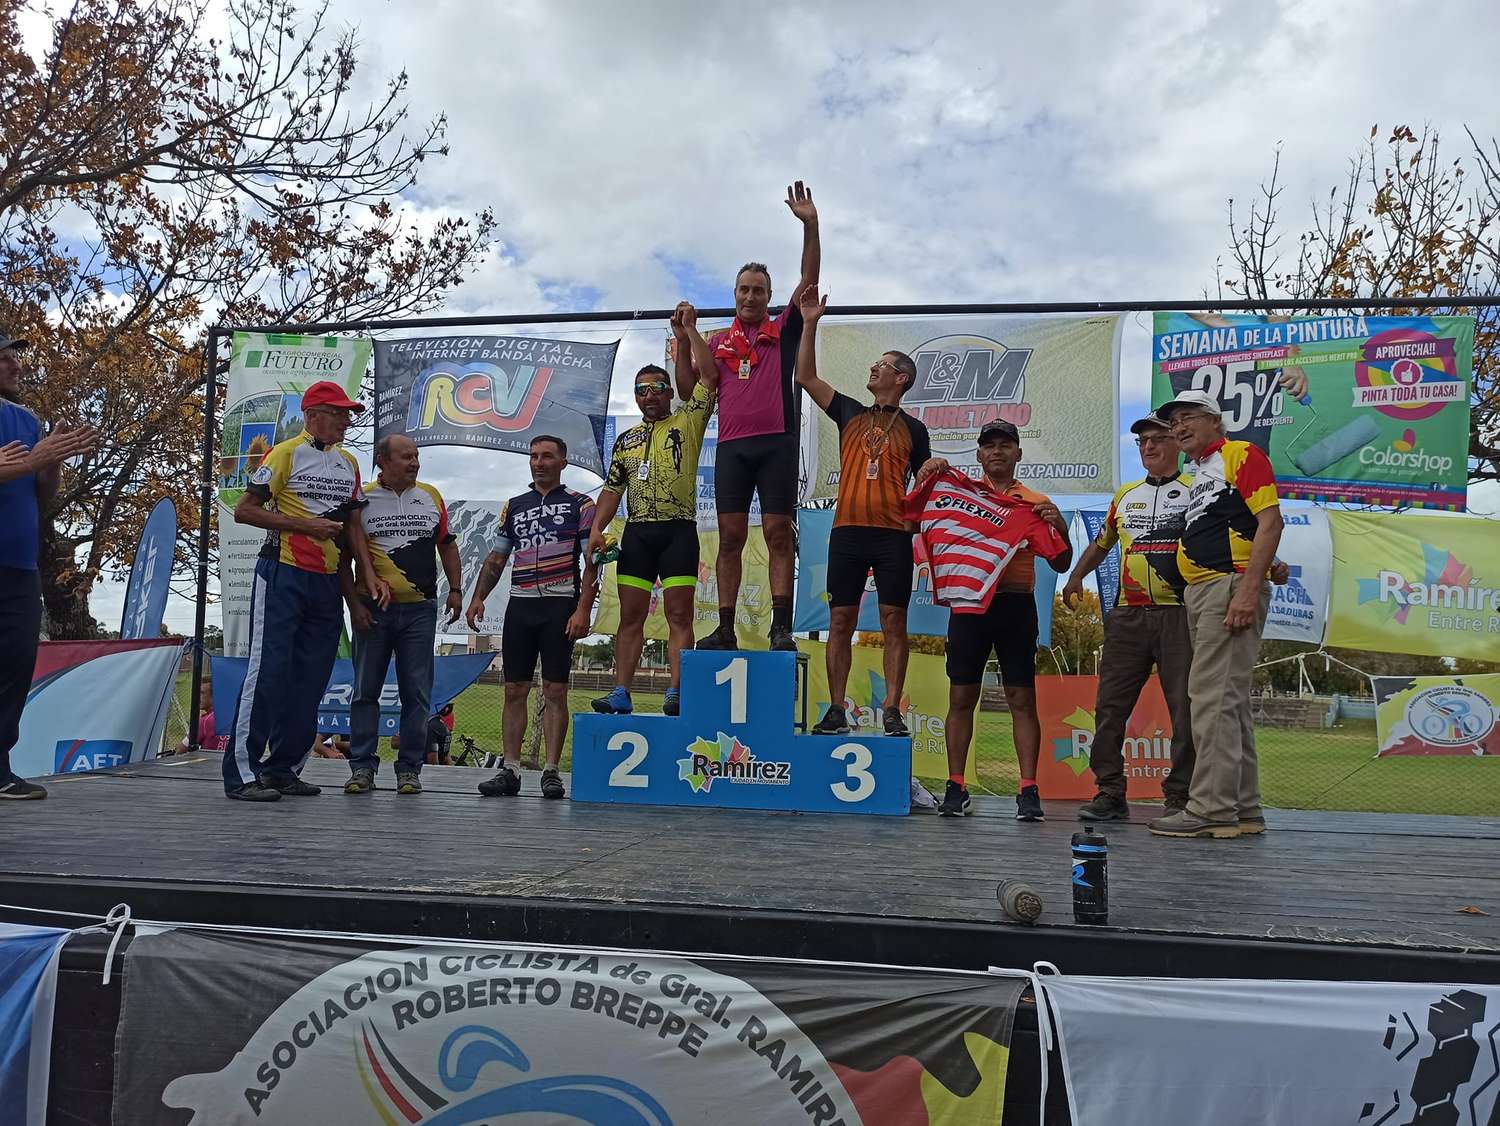 Empezó el campeonato entrerriano de rural bike. Gualeguay presente